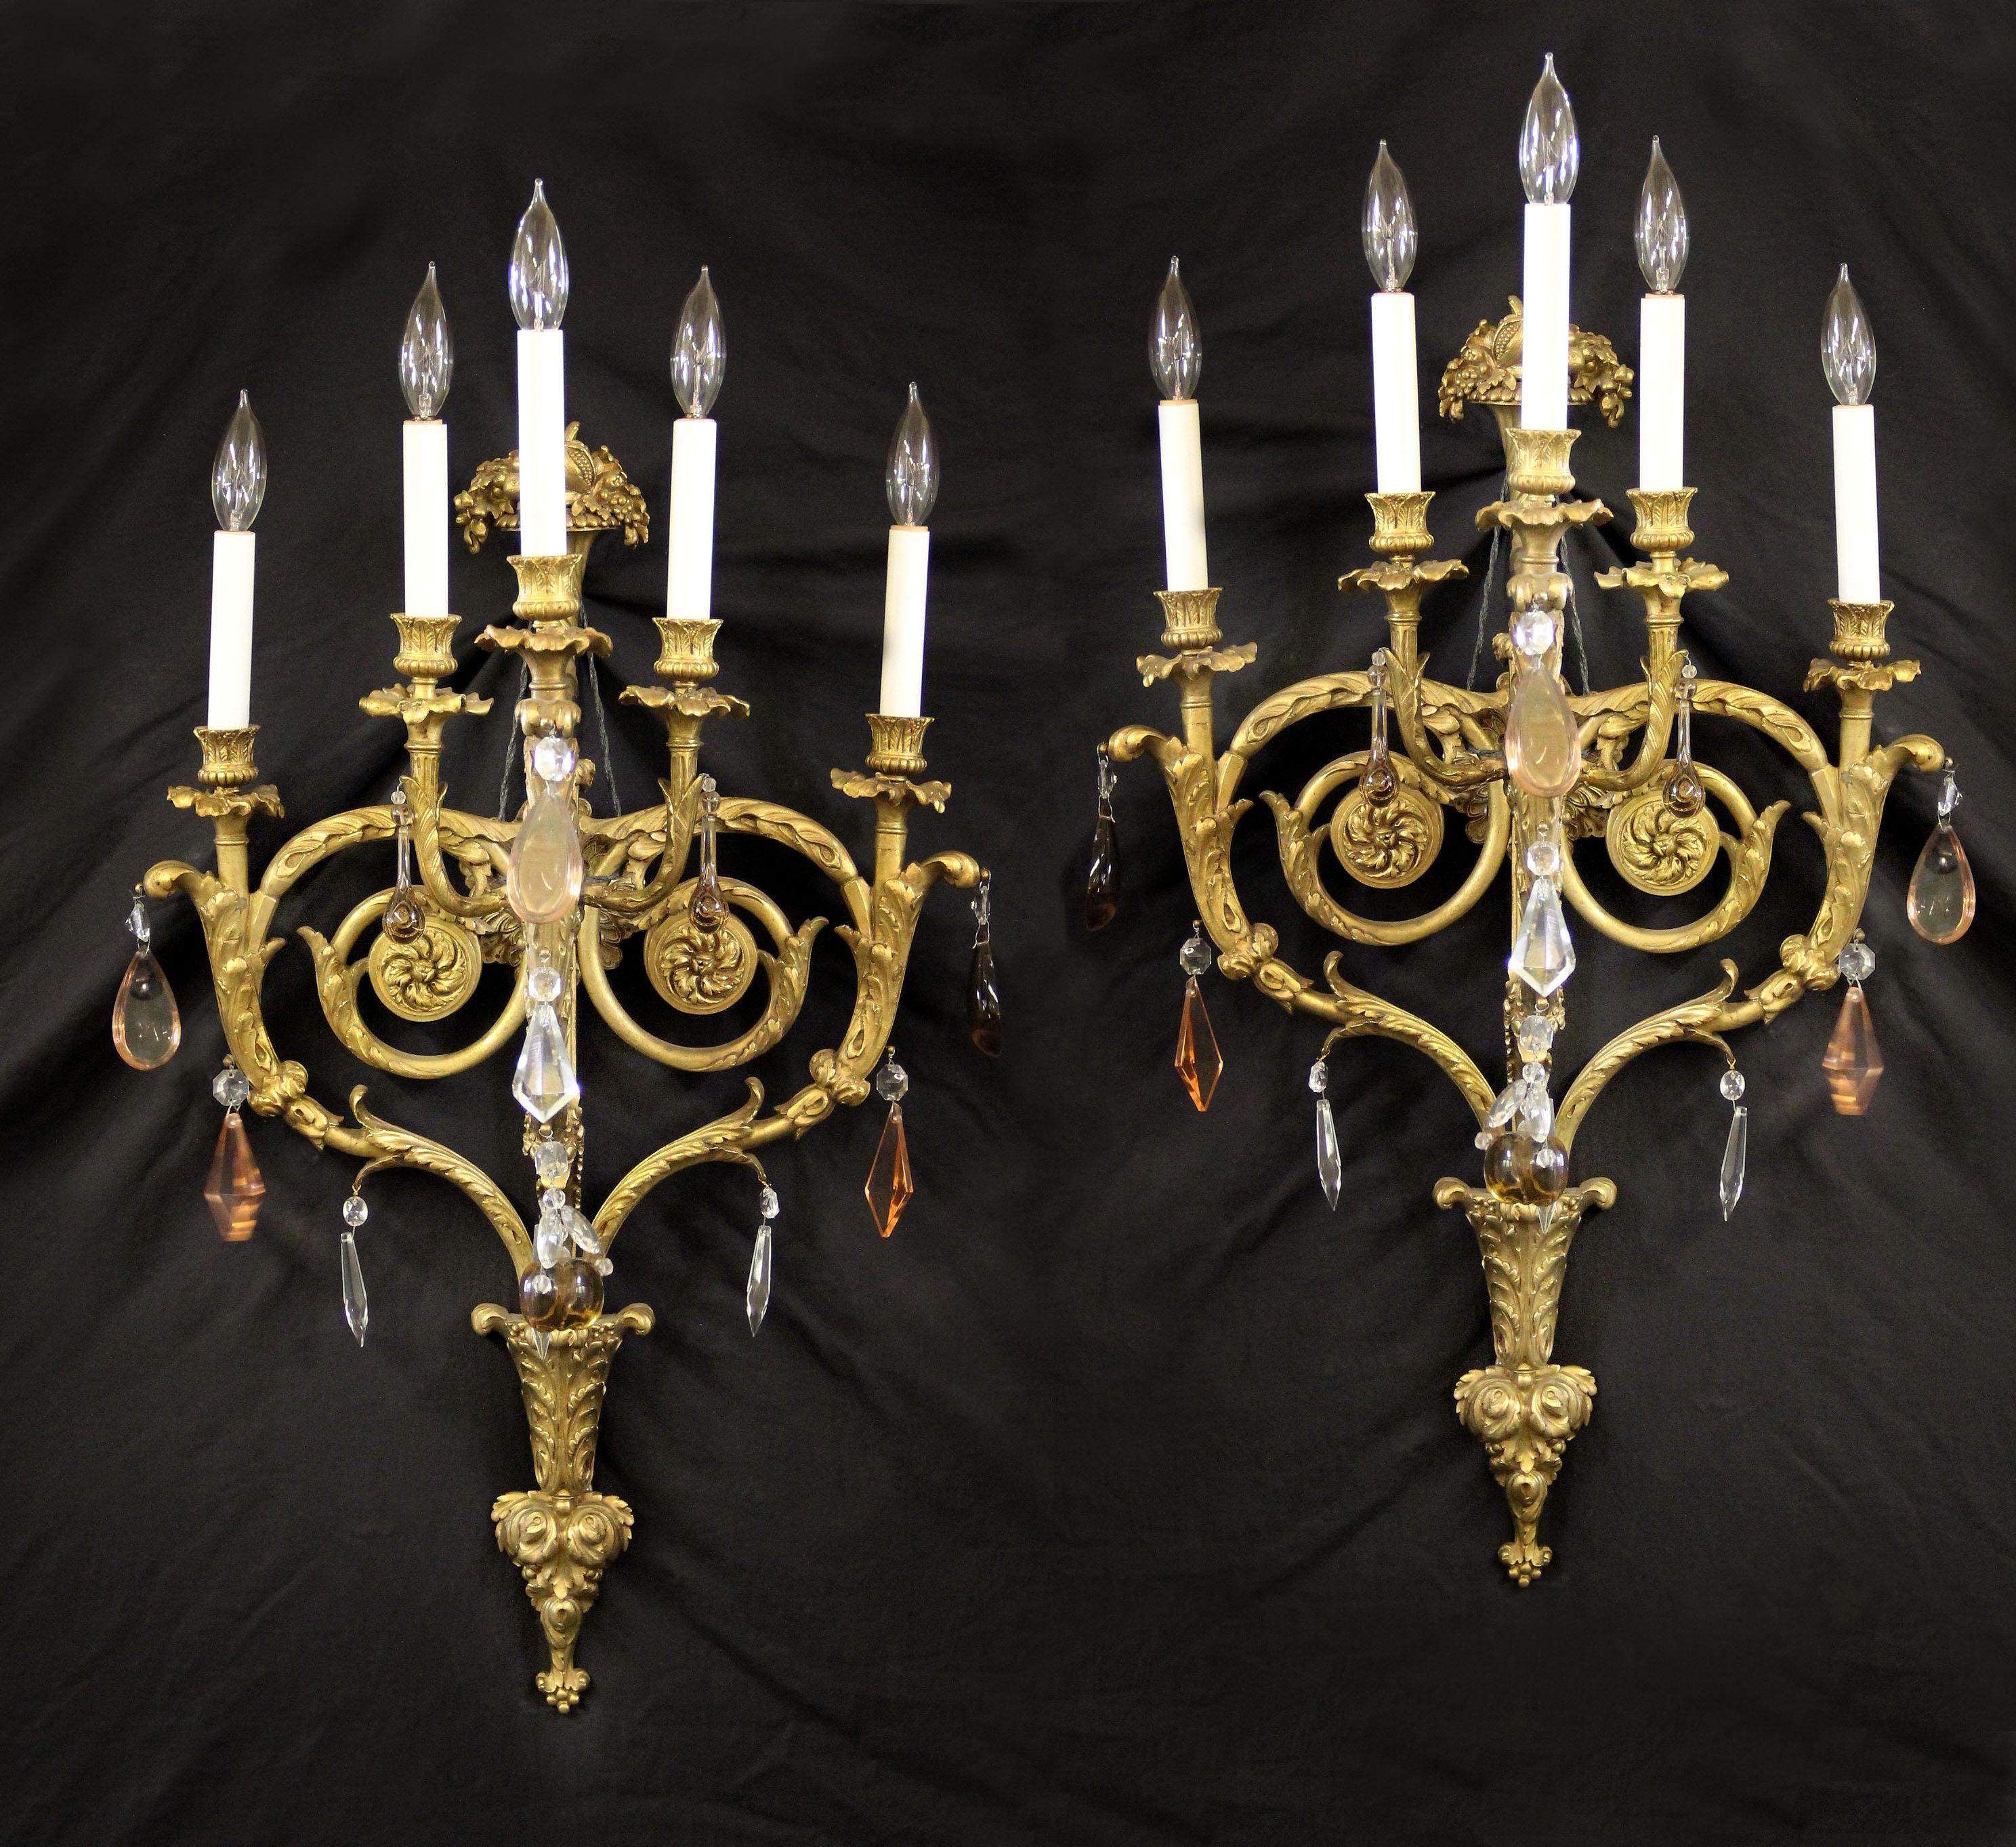 Ein hochwertiges Paar vergoldeter Bronze und französischem Kristall des späten 19. Jahrhunderts mit fünf Lichtern.

Facettiertes und geformtes Kristall, foliierte Arme und Rückwand, umrahmt von einem Füllhorn mit Früchten und Blumen, fünfstufige